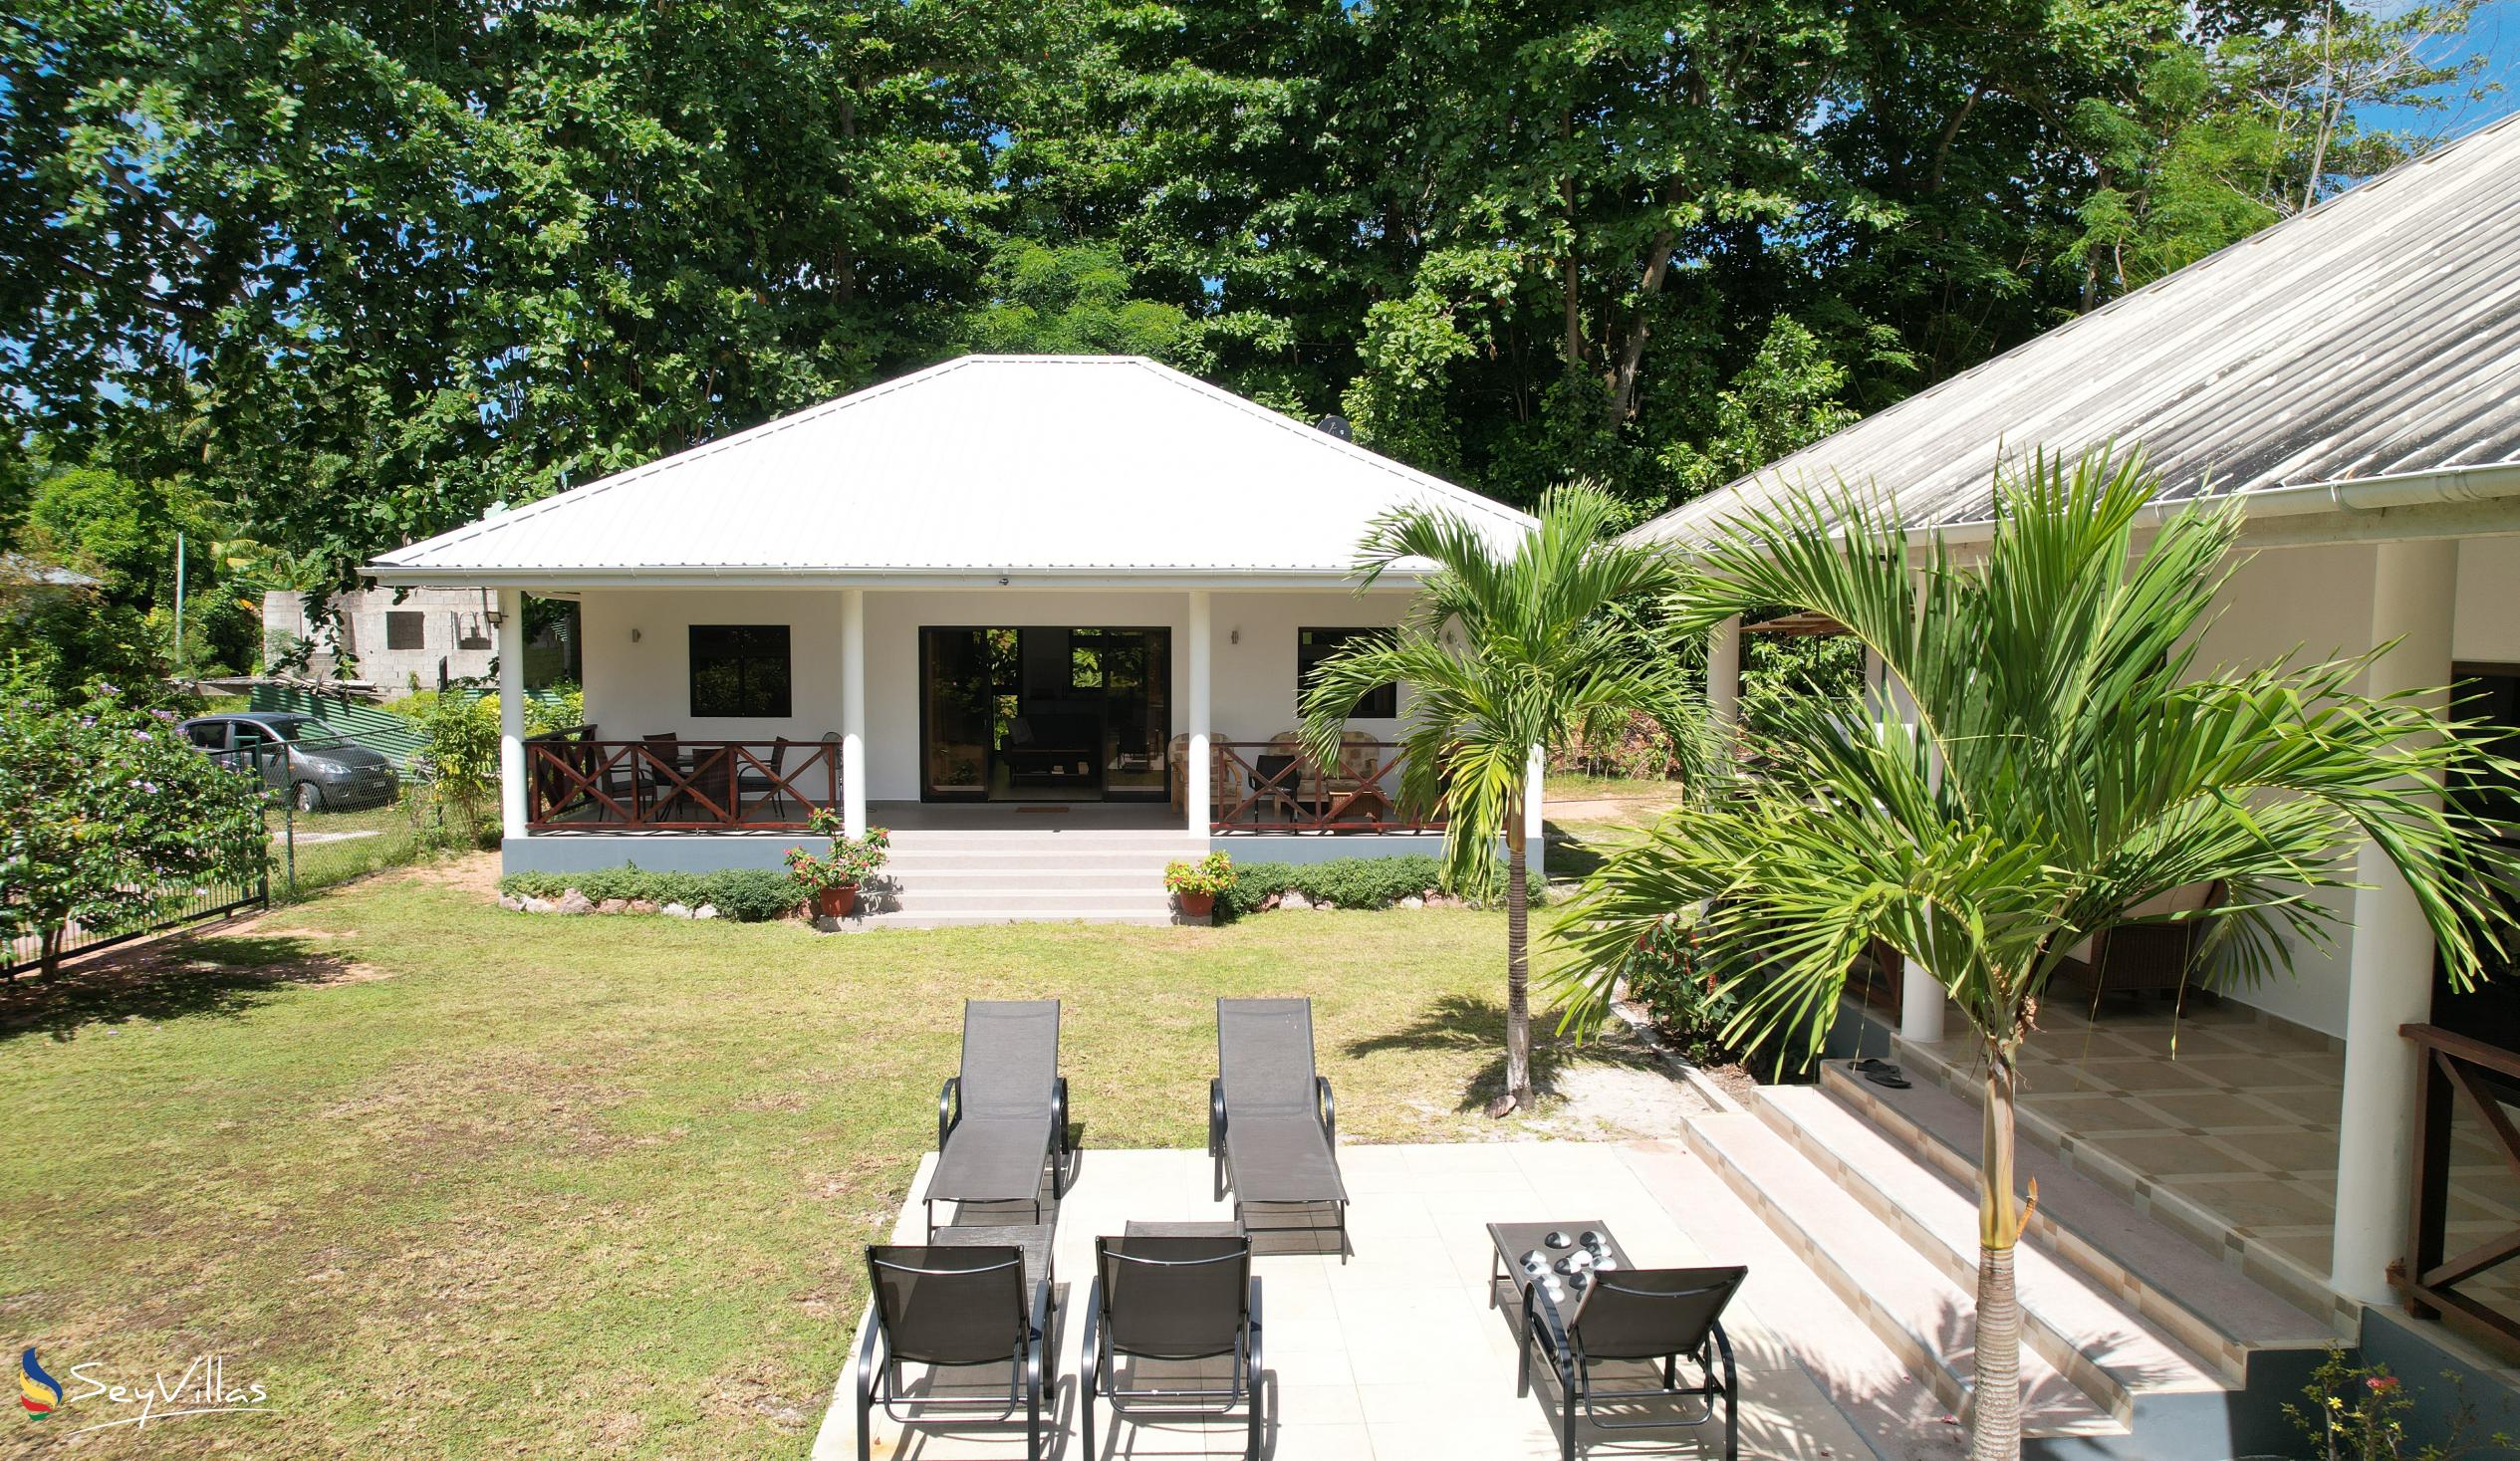 Foto 69: Villa Laure - Aussenbereich - Praslin (Seychellen)